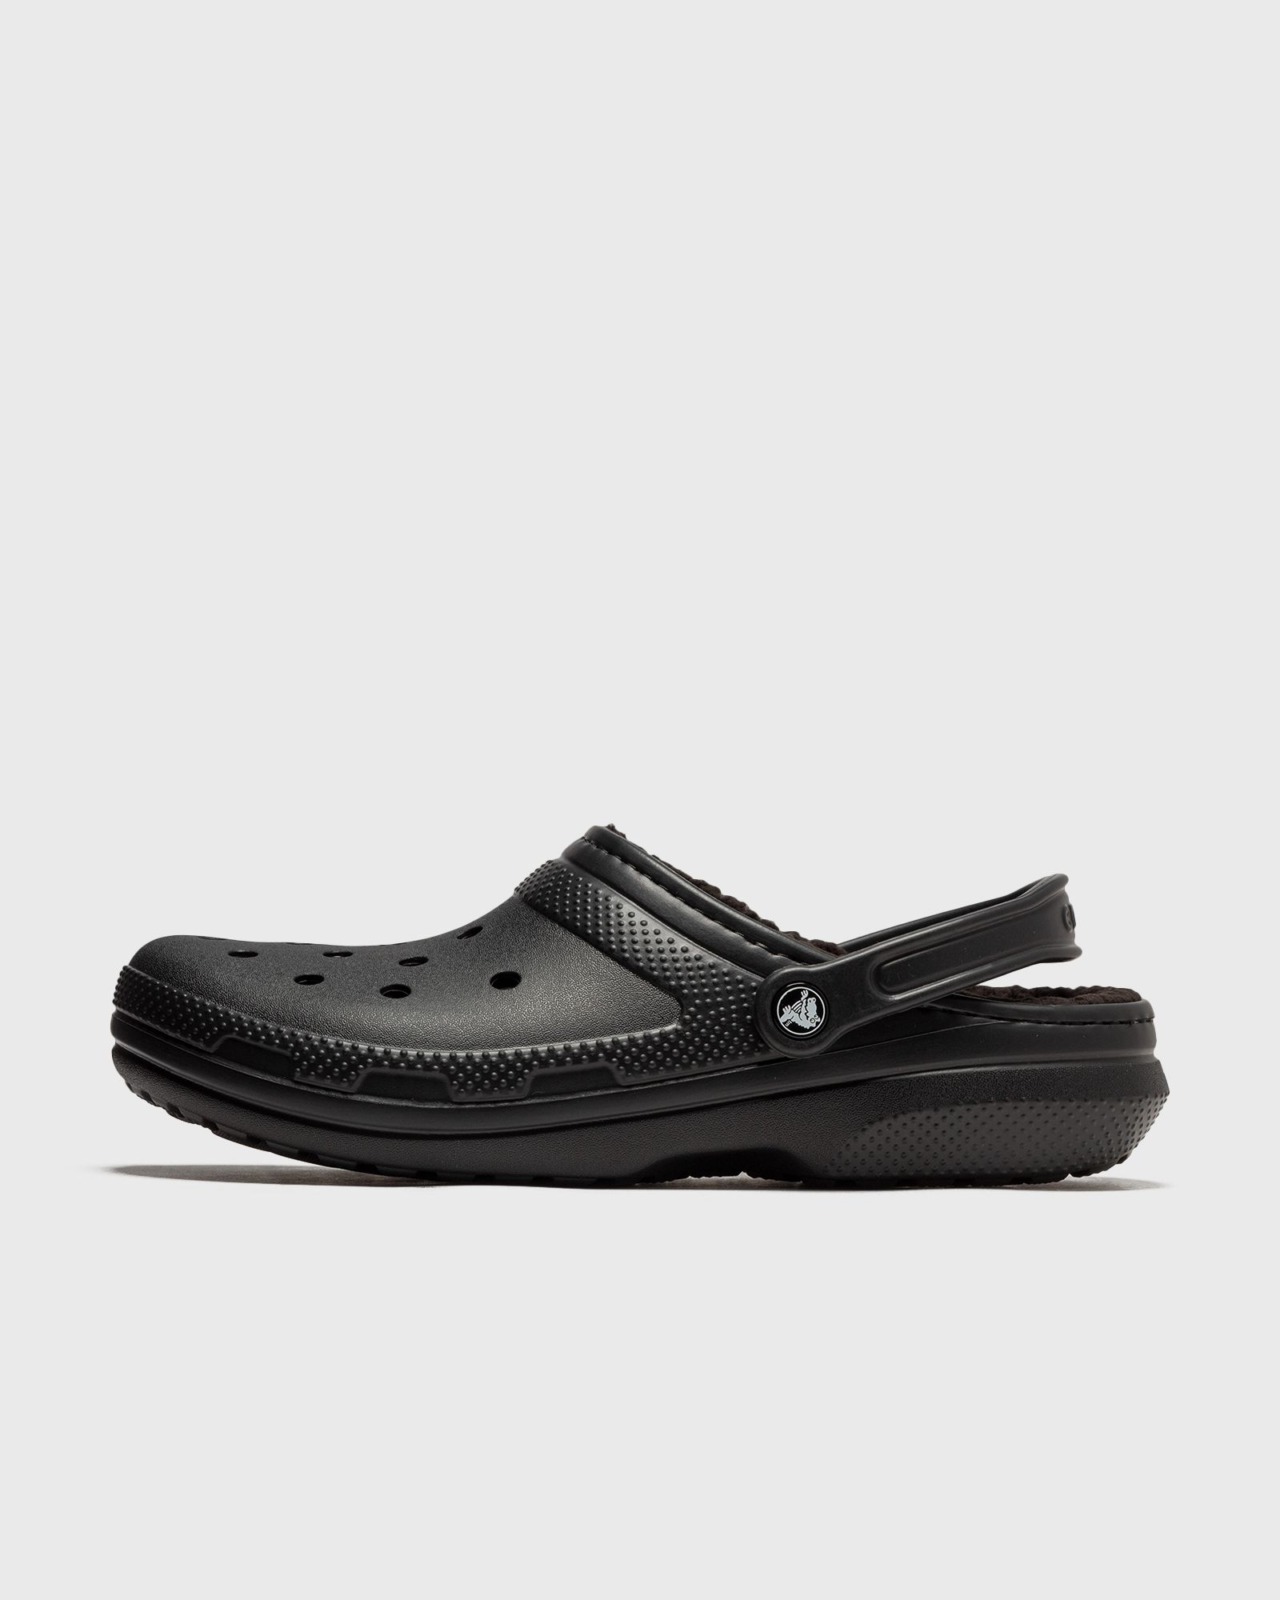 Gents Black Sandals Crocs Bstn GOOFASH